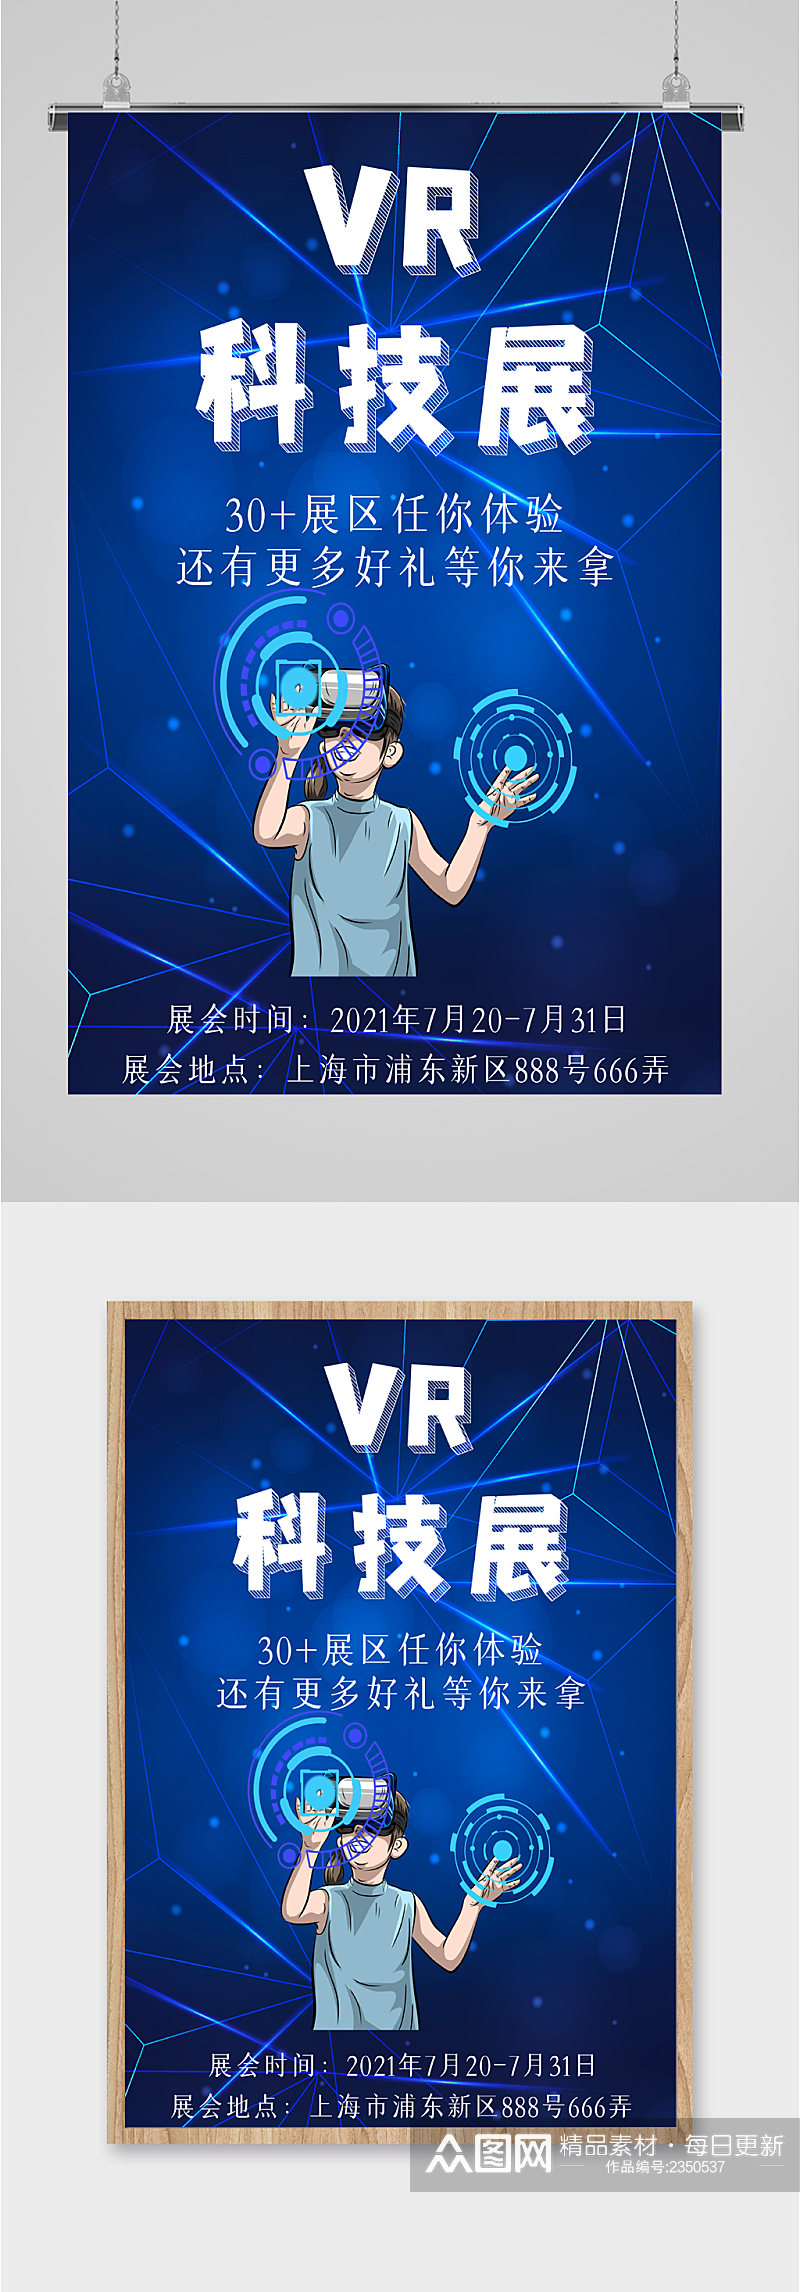 VR科技展蓝色海报素材